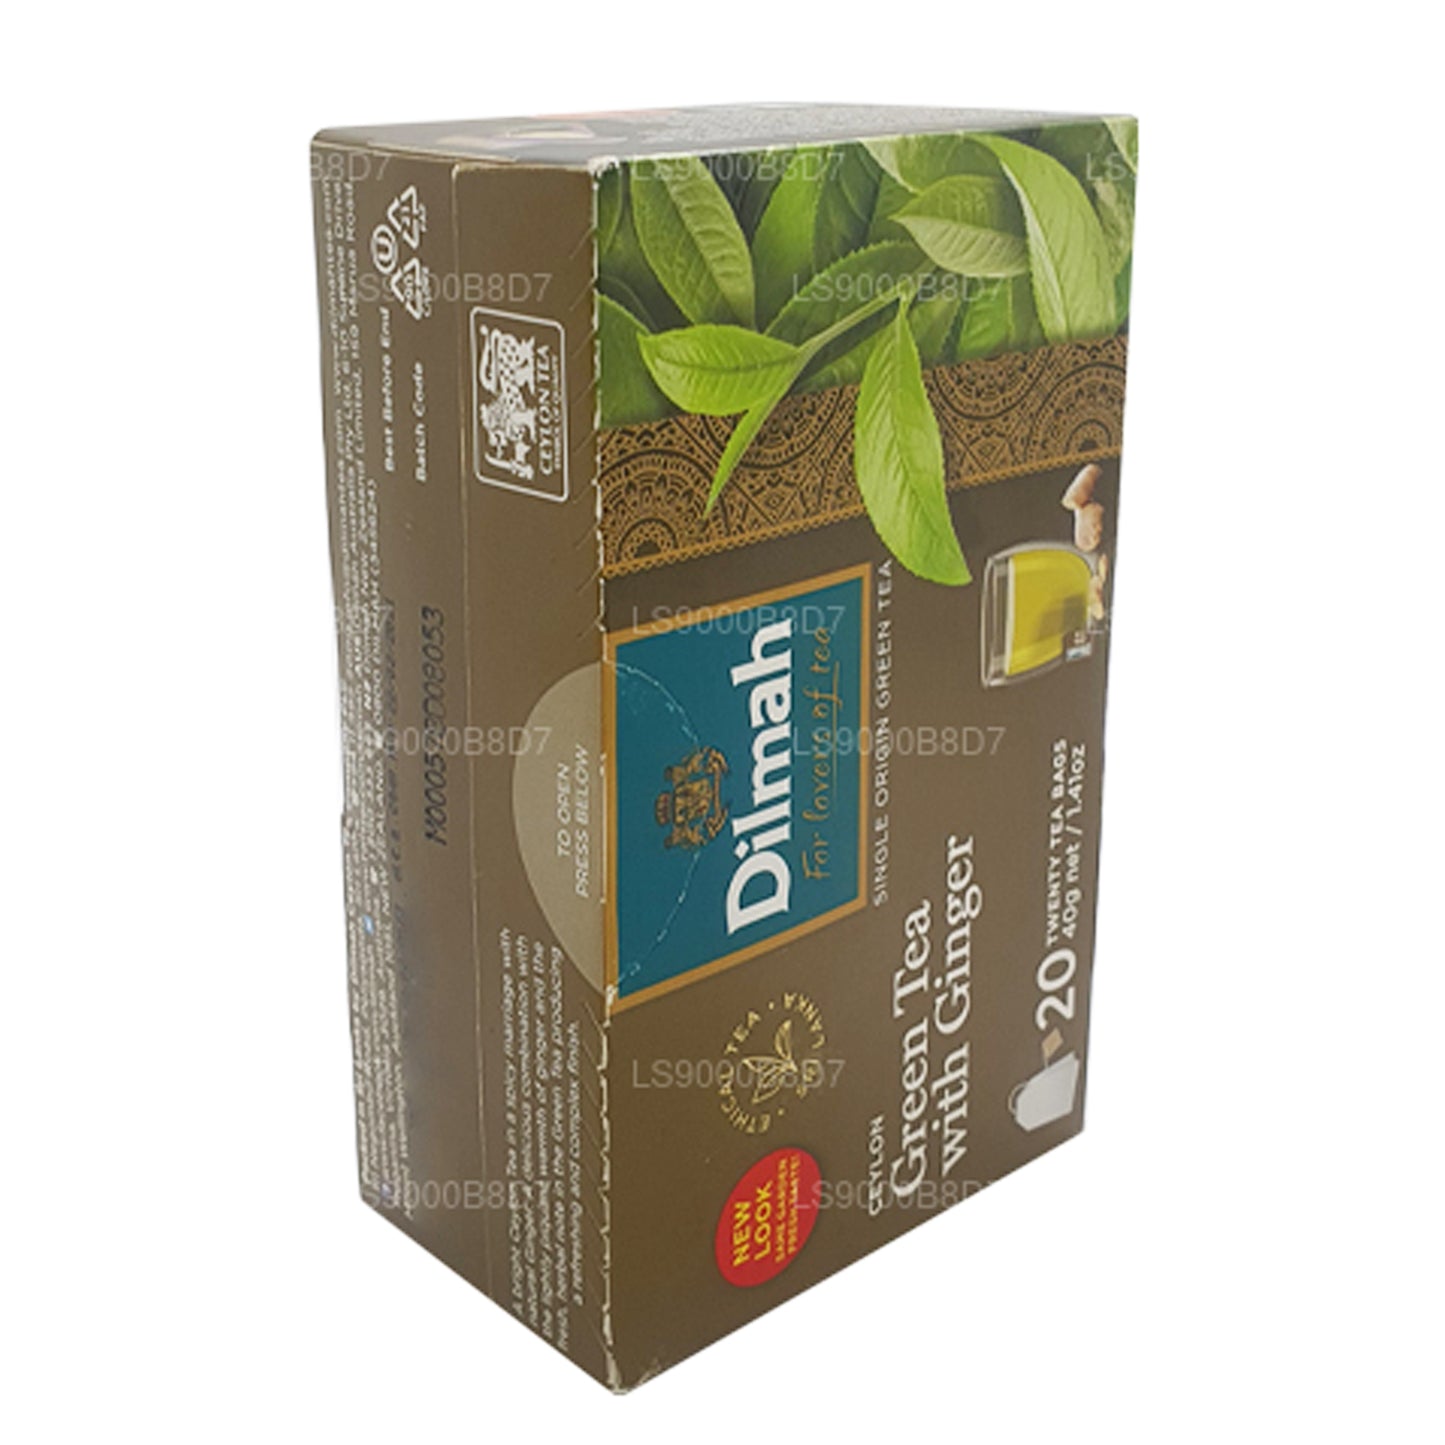 ディルマ ジンジャー入り緑茶 (40g) 20 ティーバッグ